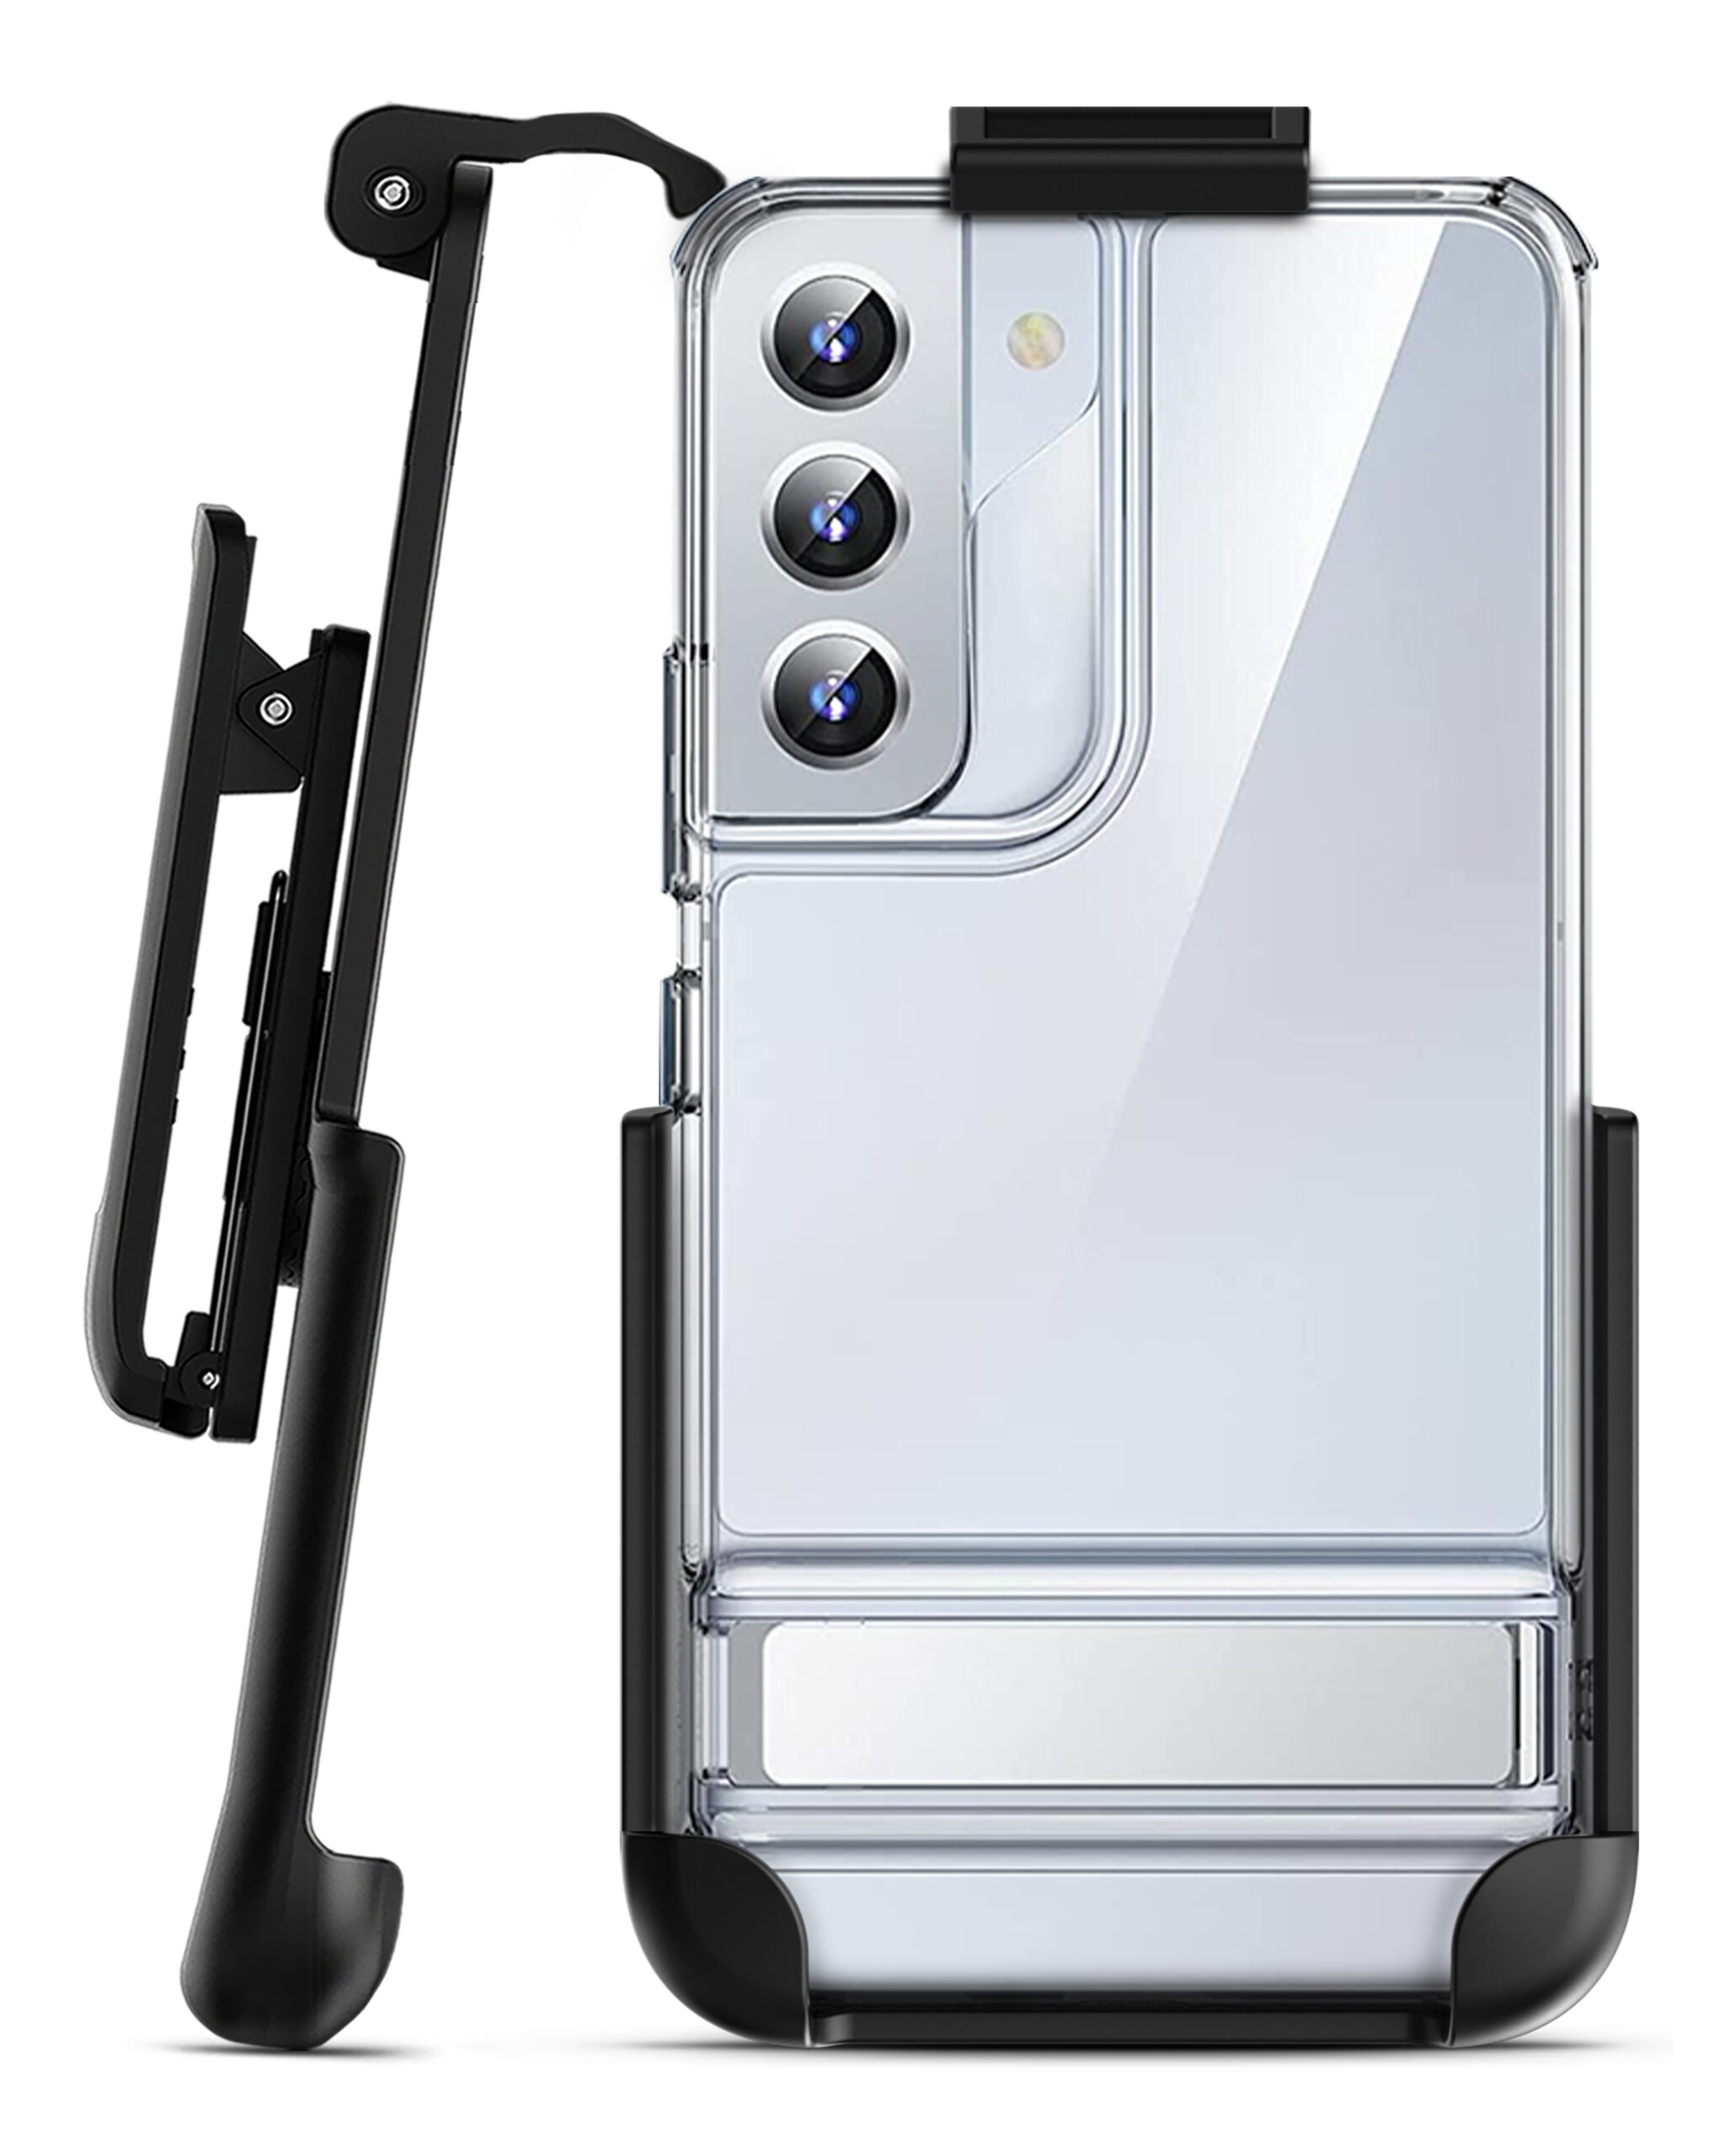 ESR Galaxy S21 Plus 5G Case Samsung Metal Kickstand Phone Case Clear Clear